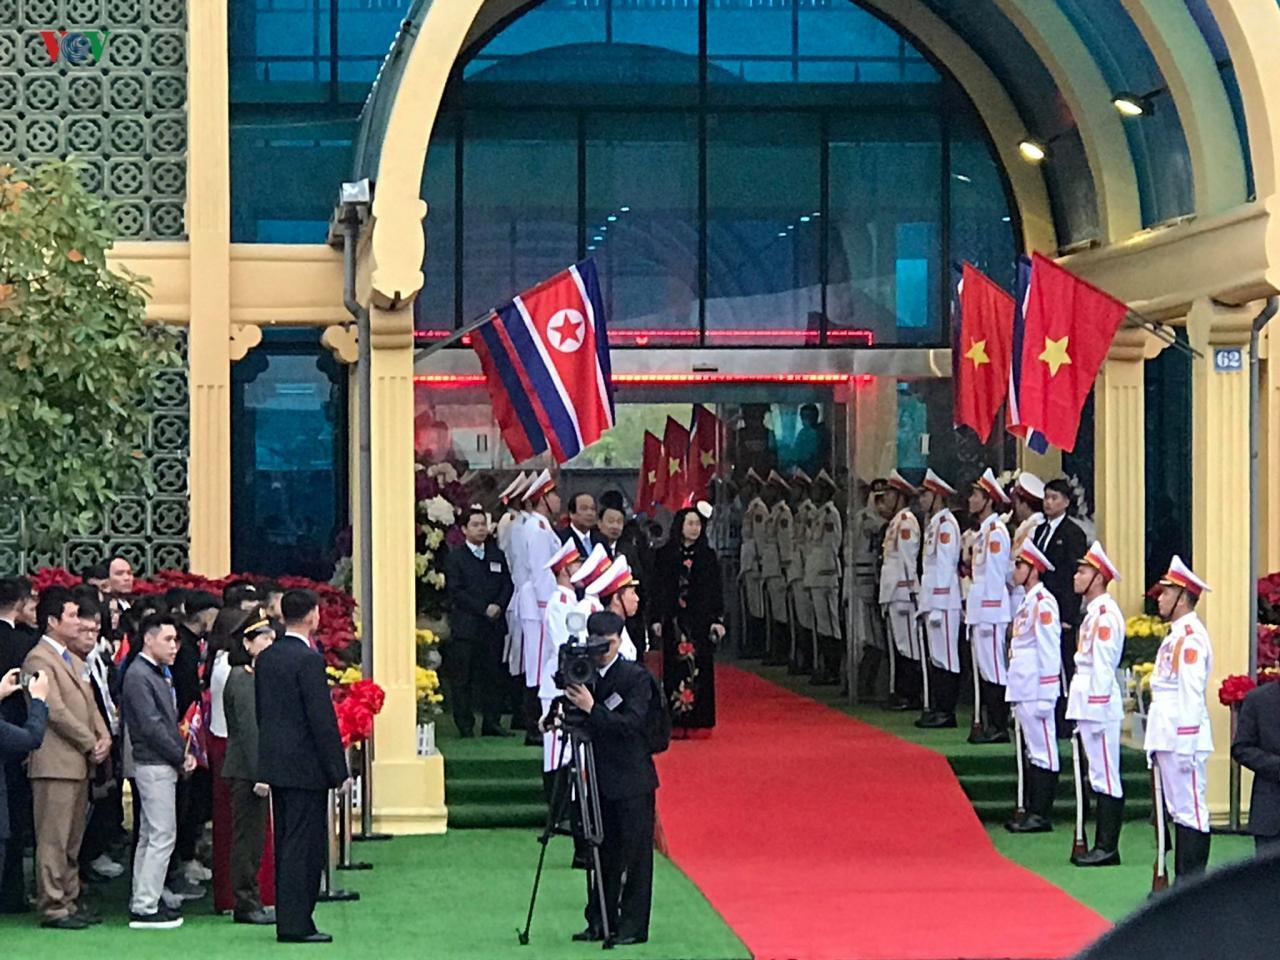 Chủ tịch Triều Tiên Kim Jong-un đến Hà Nội